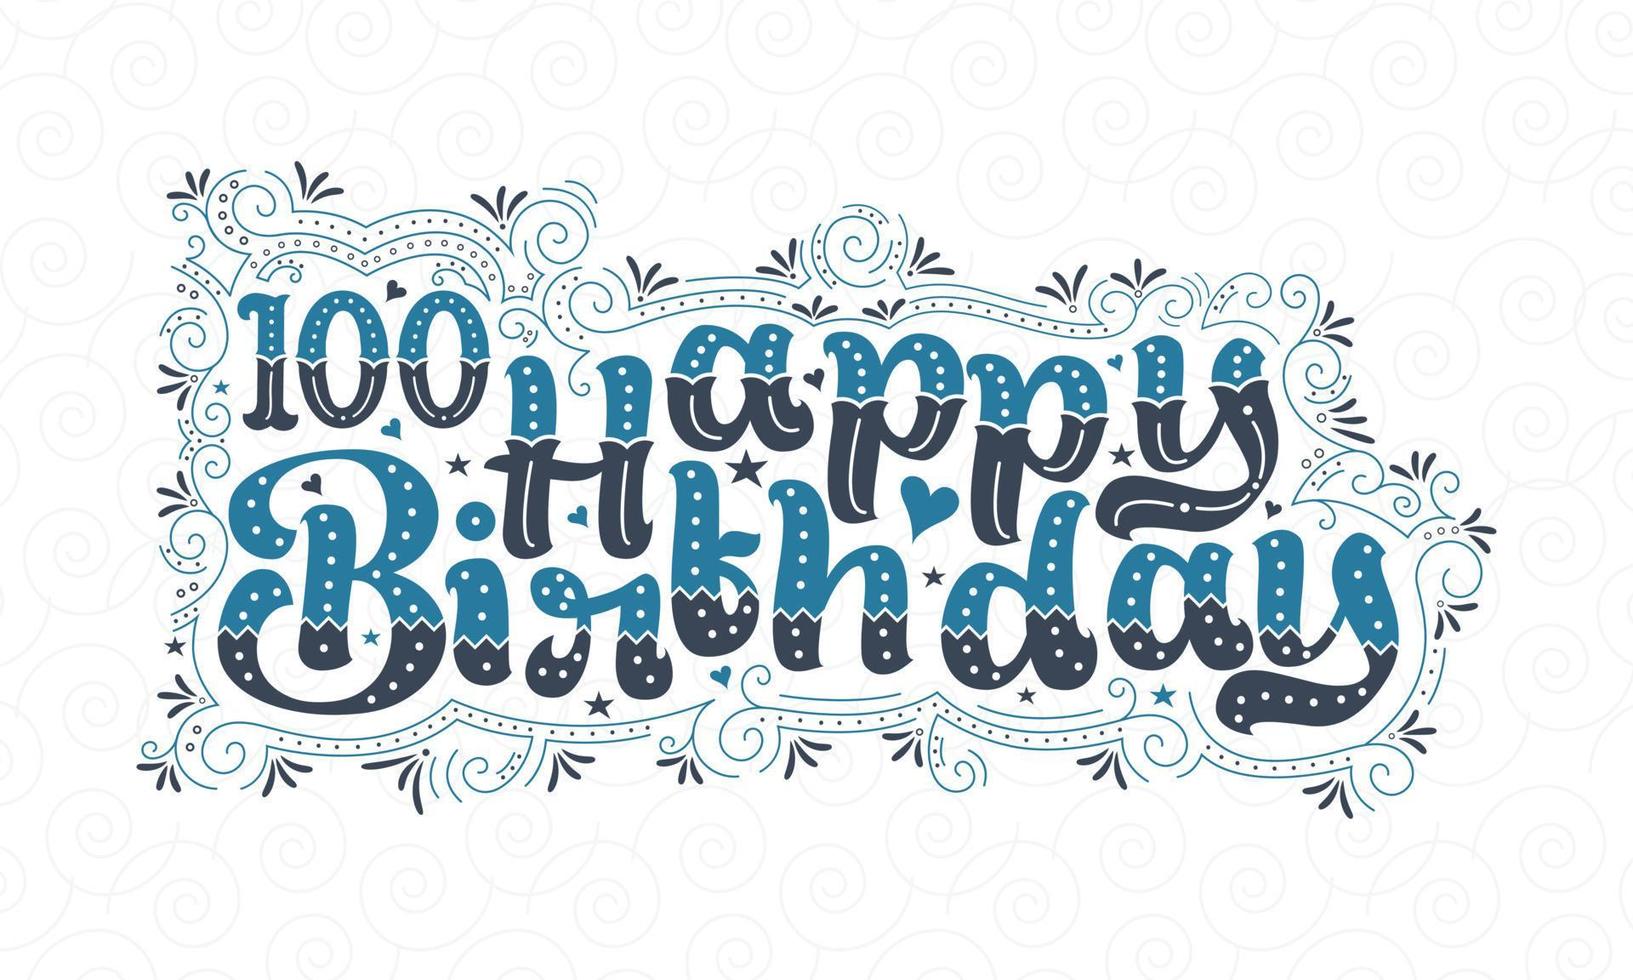 100e gelukkige verjaardag belettering, 100 jaar verjaardag mooi typografieontwerp met blauwe en zwarte stippen, lijnen en bladeren. vector